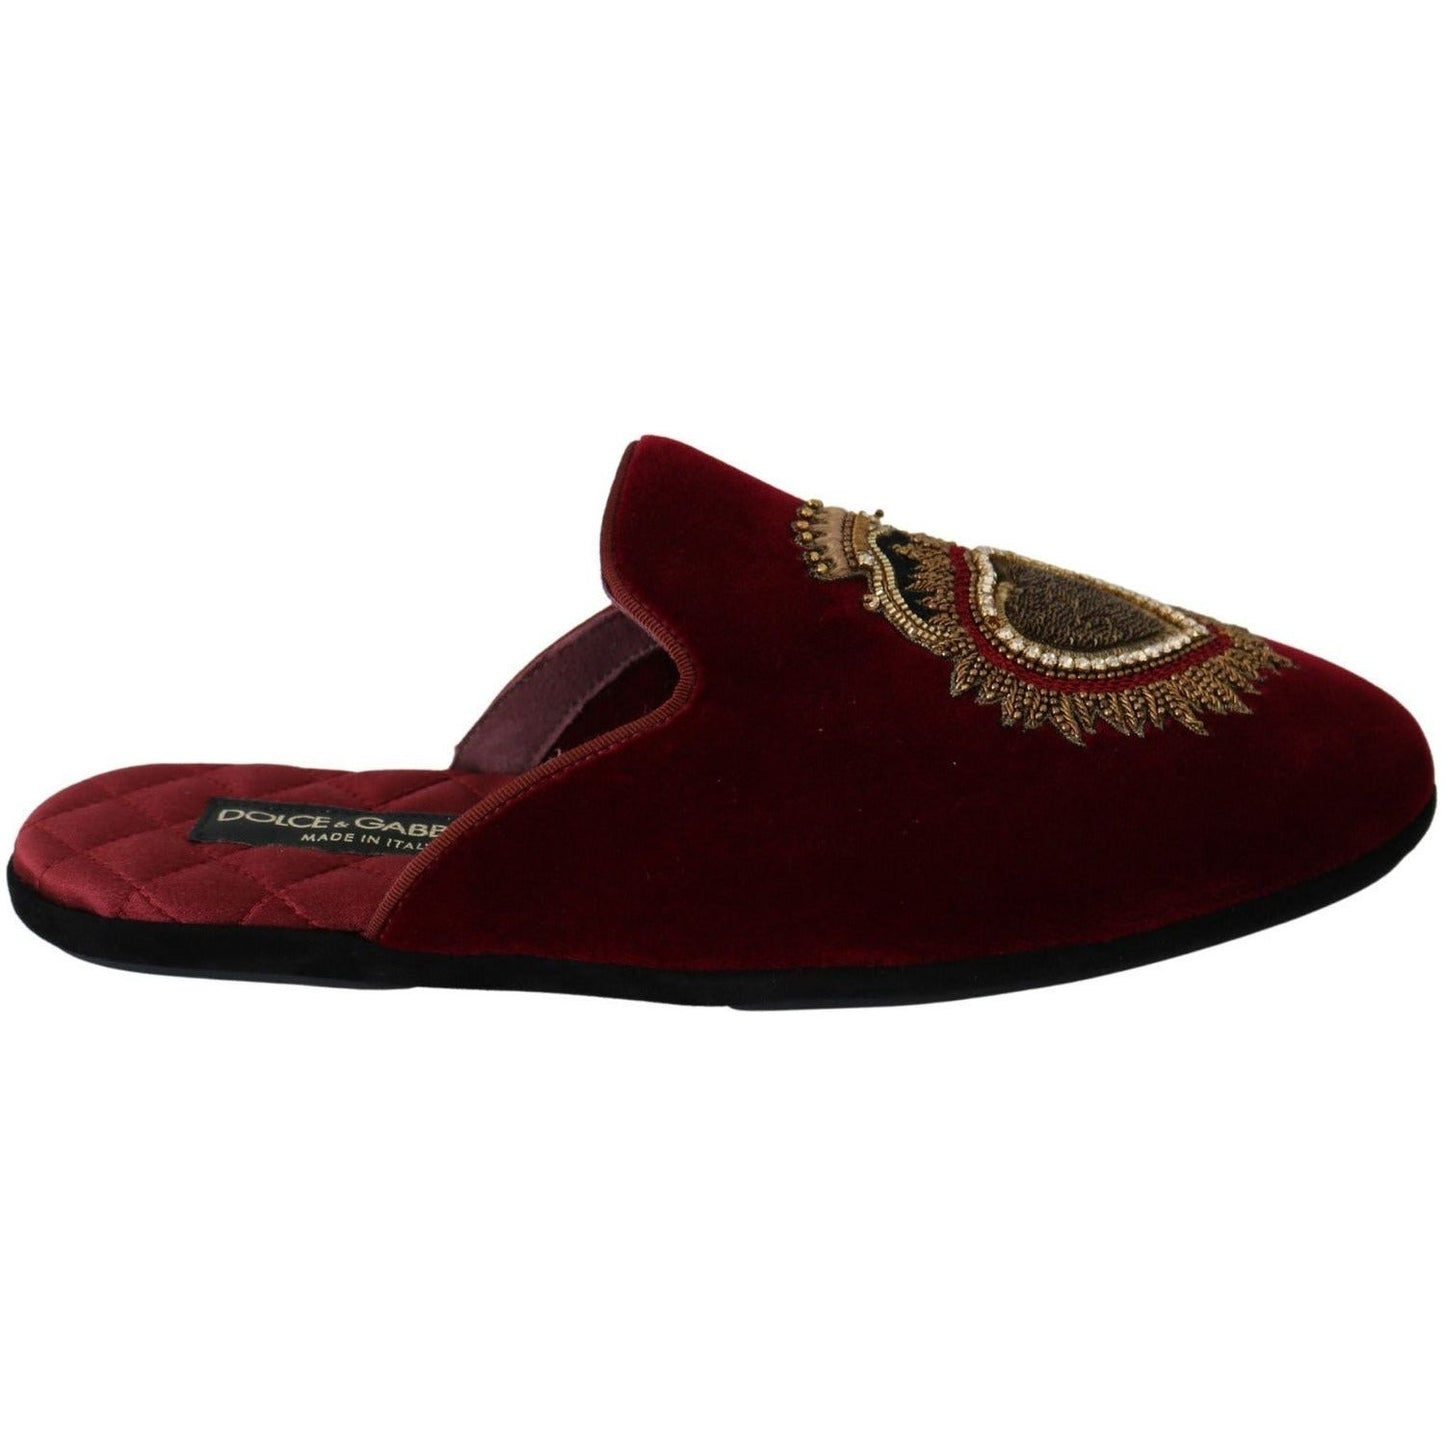 Dolce & Gabbana Red Velvet Embroidered Slides red-velvet-sacred-heart-embroidery-slides-shoes IMG_0087-2-scaled-b920f8e2-5c7.jpg